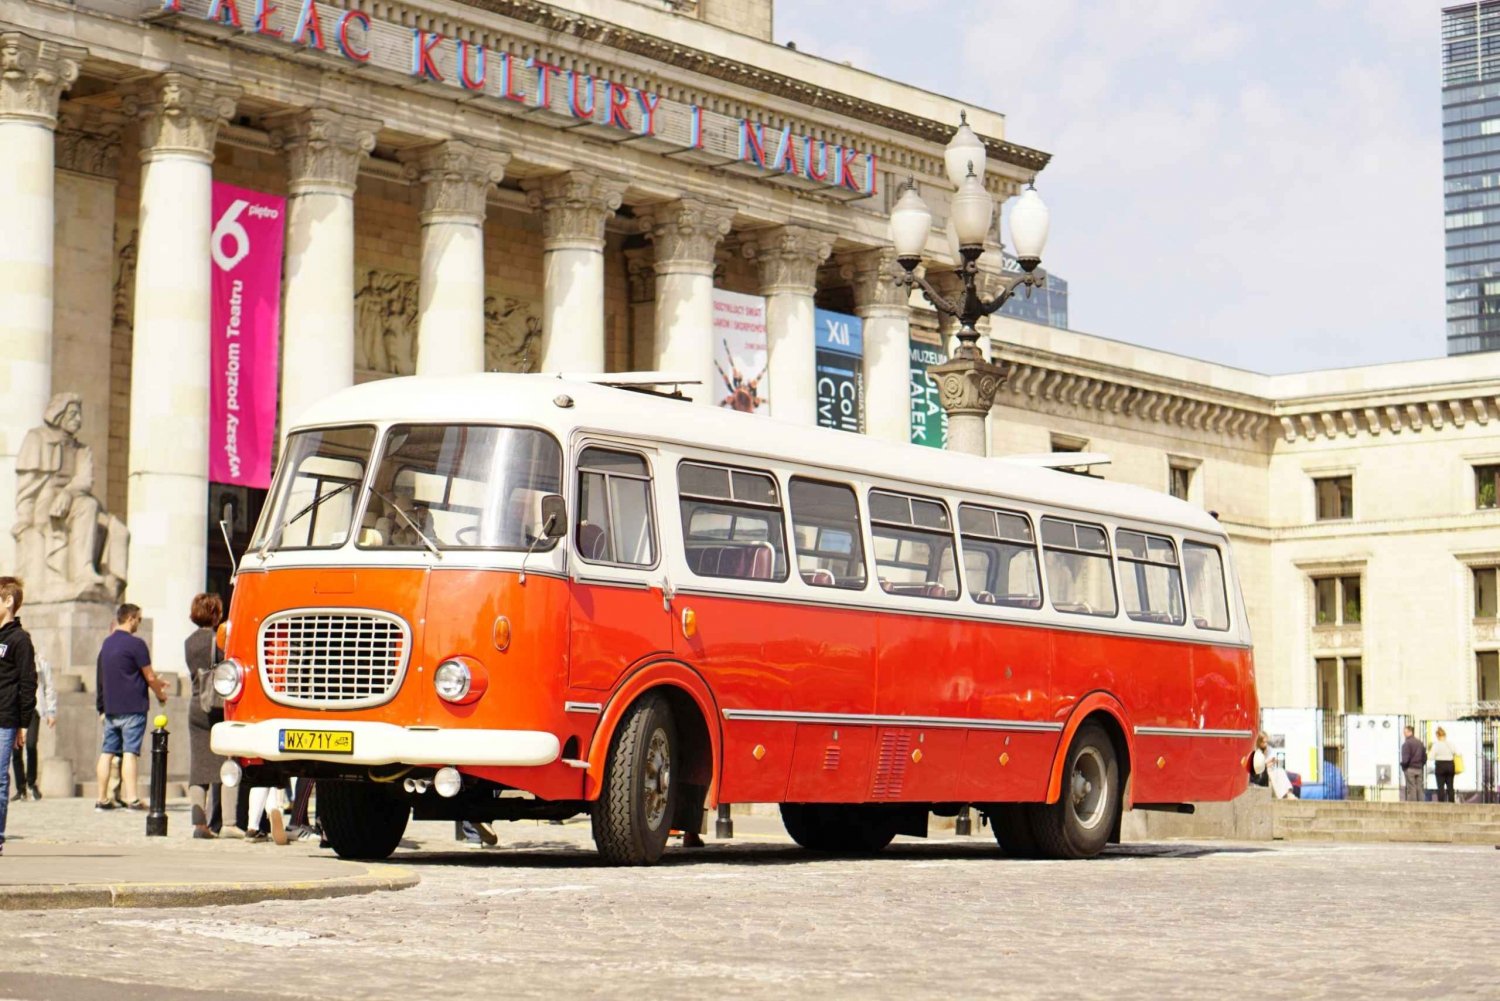 Varsovia: Lo más destacado Visita guiada en autobús retro